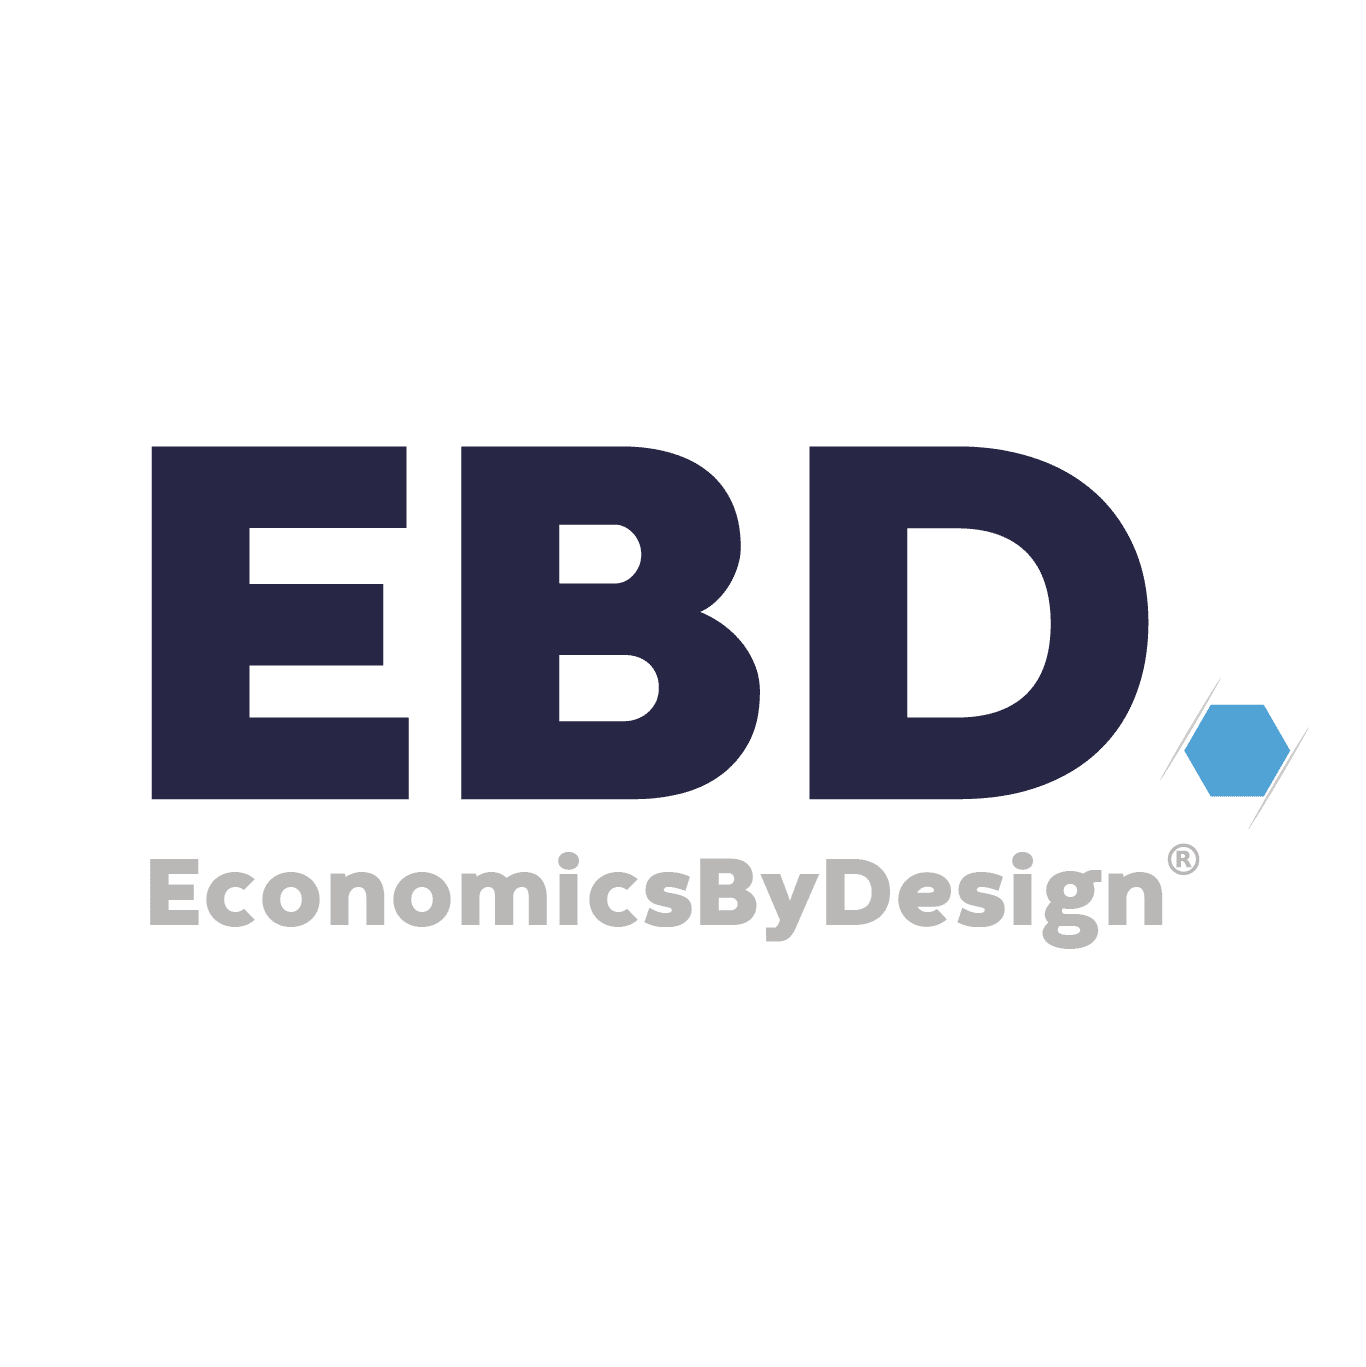 ebd标识 经济学的设计